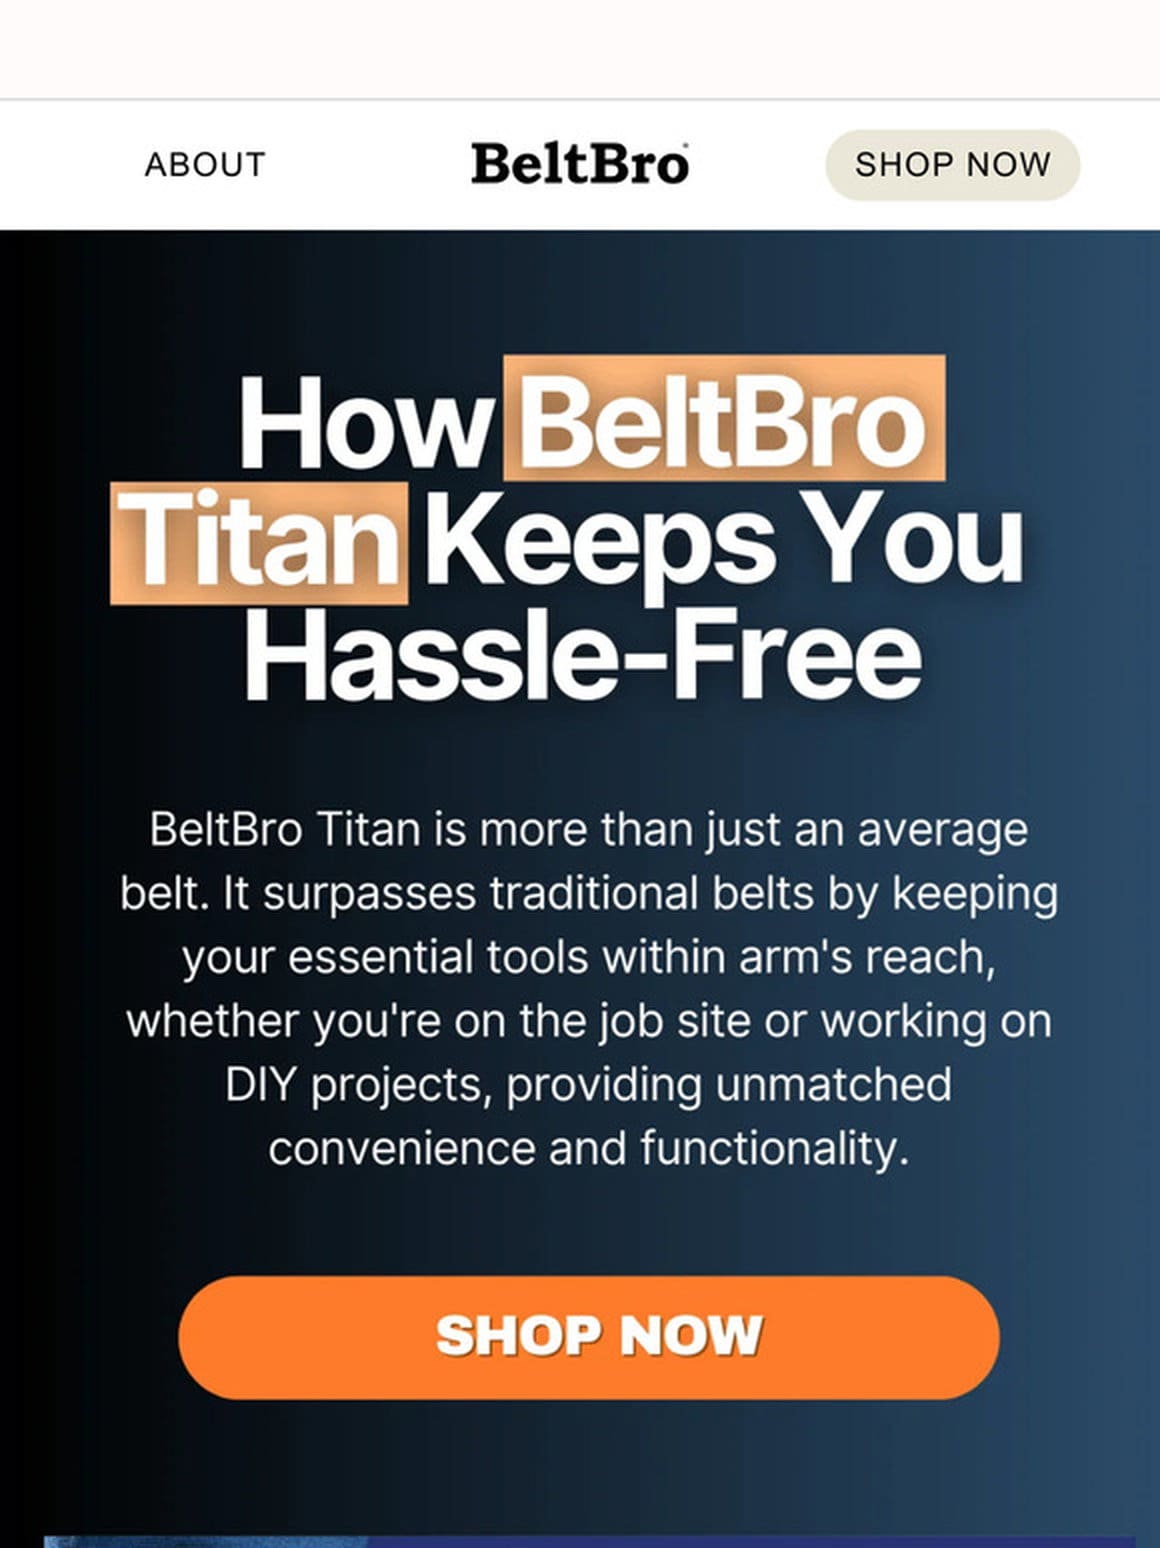 ️ Hands-Free Comfort with BeltBro Titan!